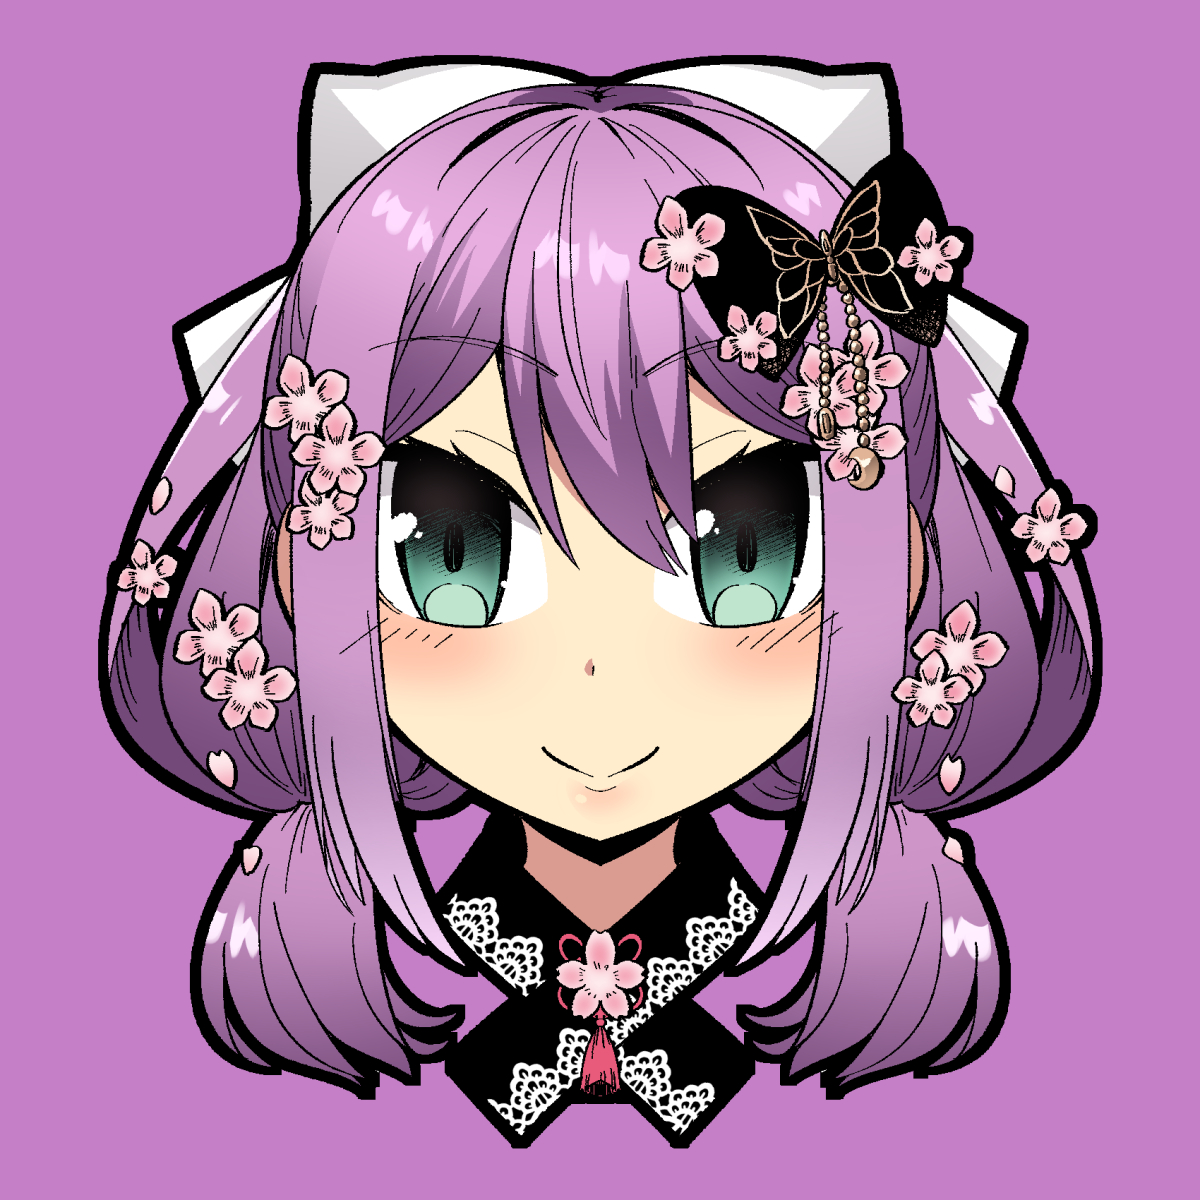 1girl solo hair ornament smile purple background flower hair flower  illustration images